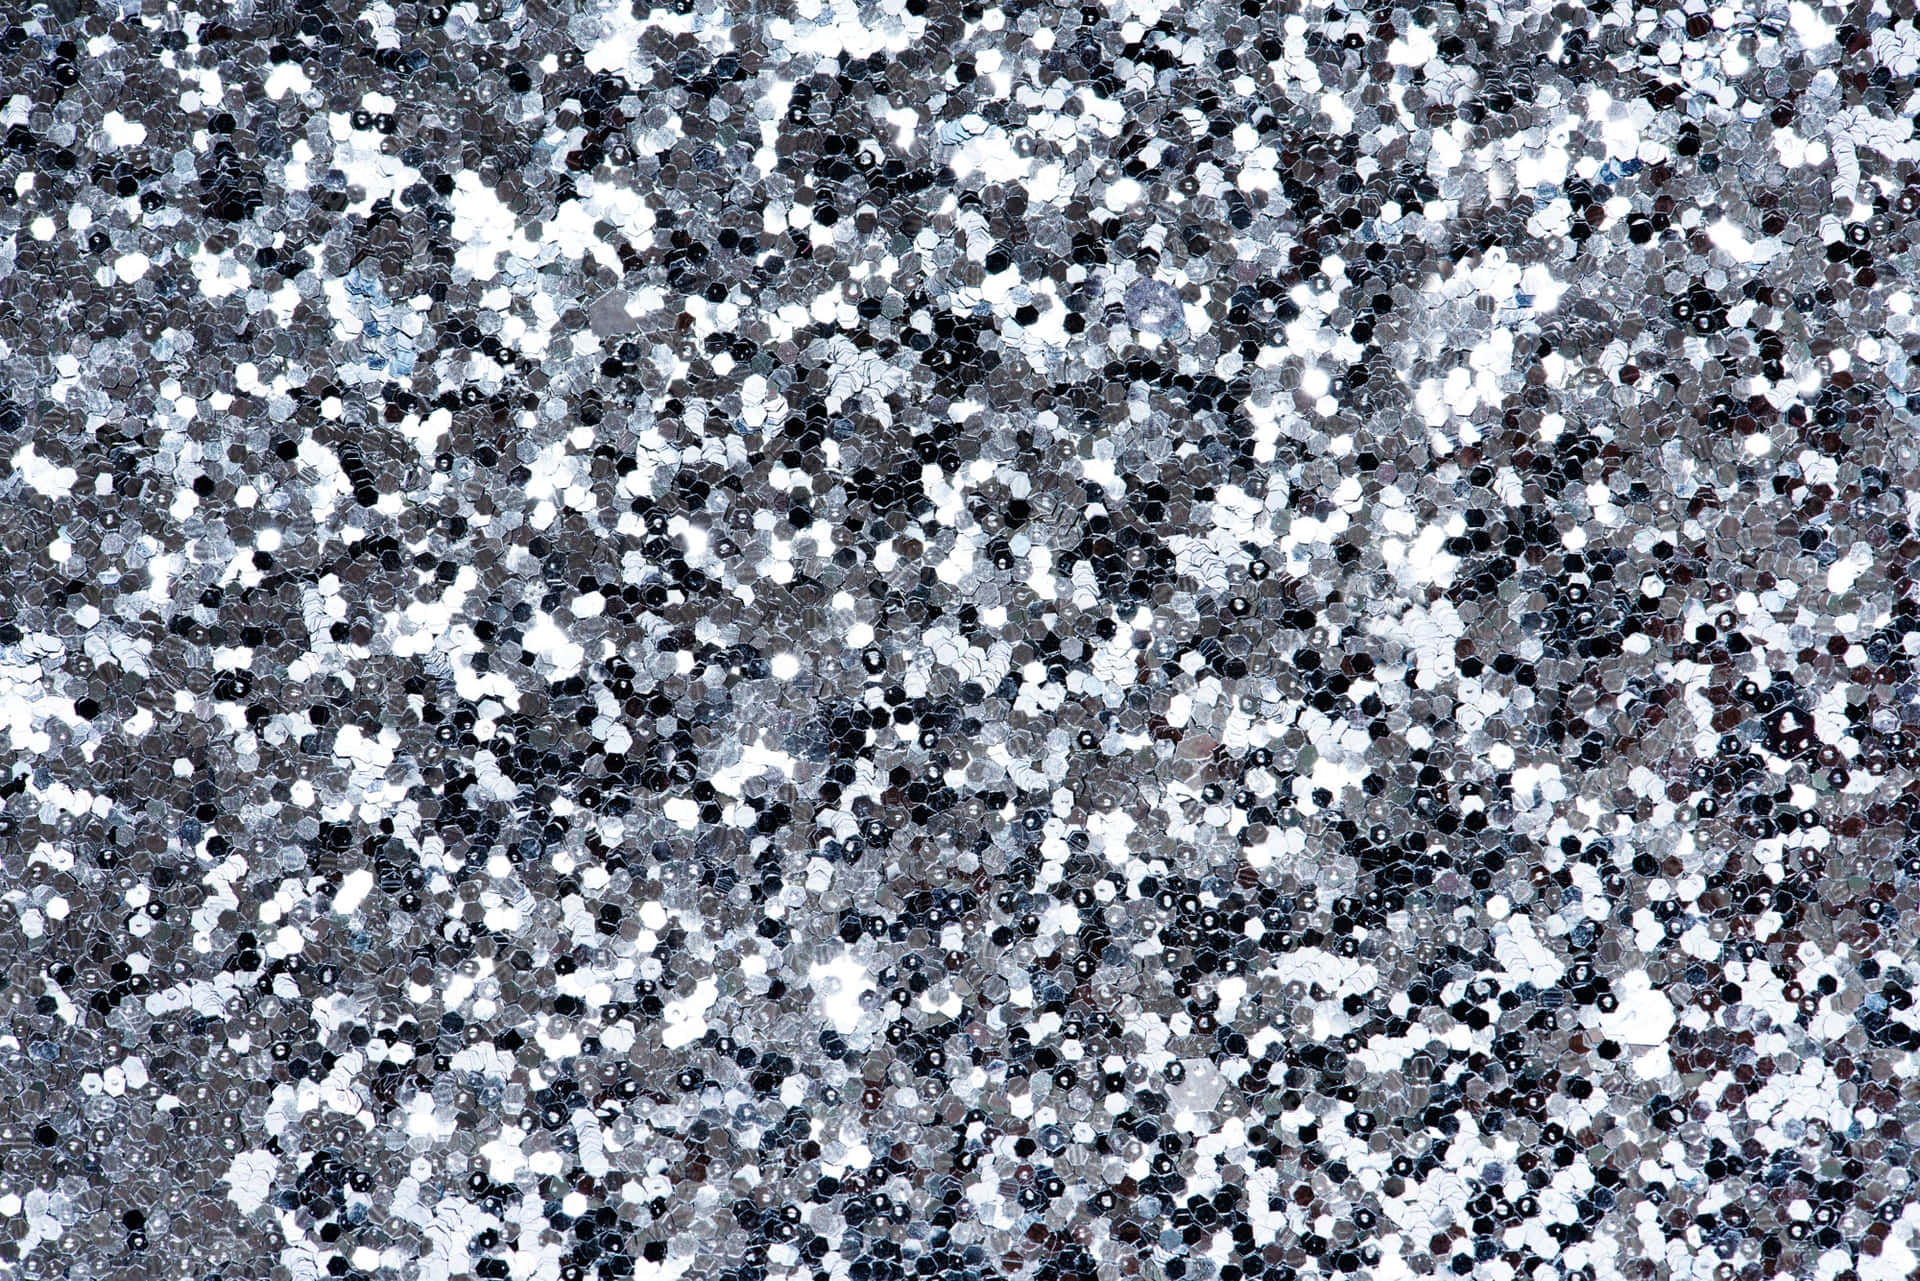 En sort og hvid baggrund med masser af små hvide prikker